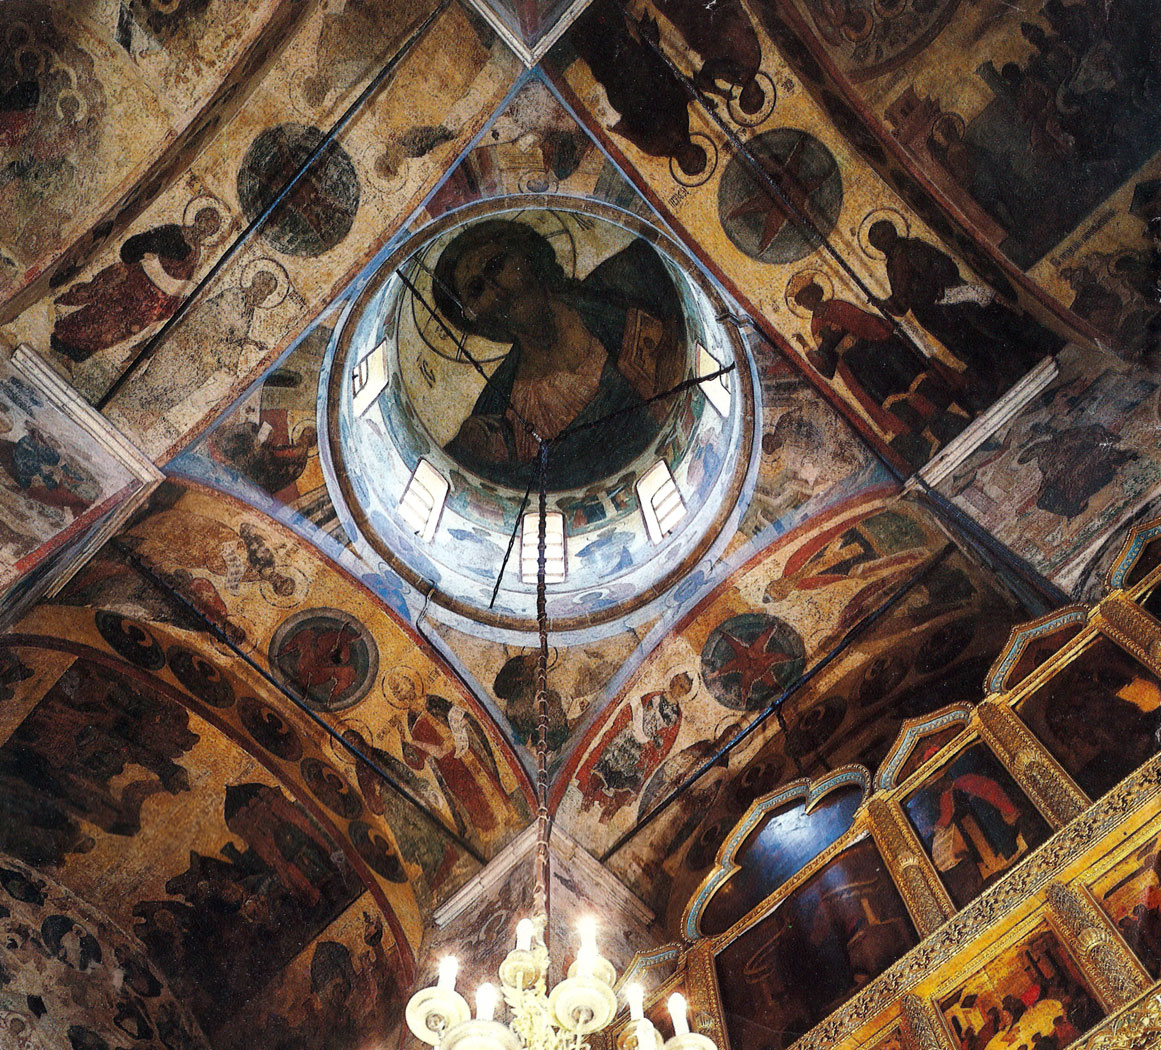 Благовещенский собор. Интерьер. Центральная часть. Cathedral of the Annunciation.Interior of the central part.